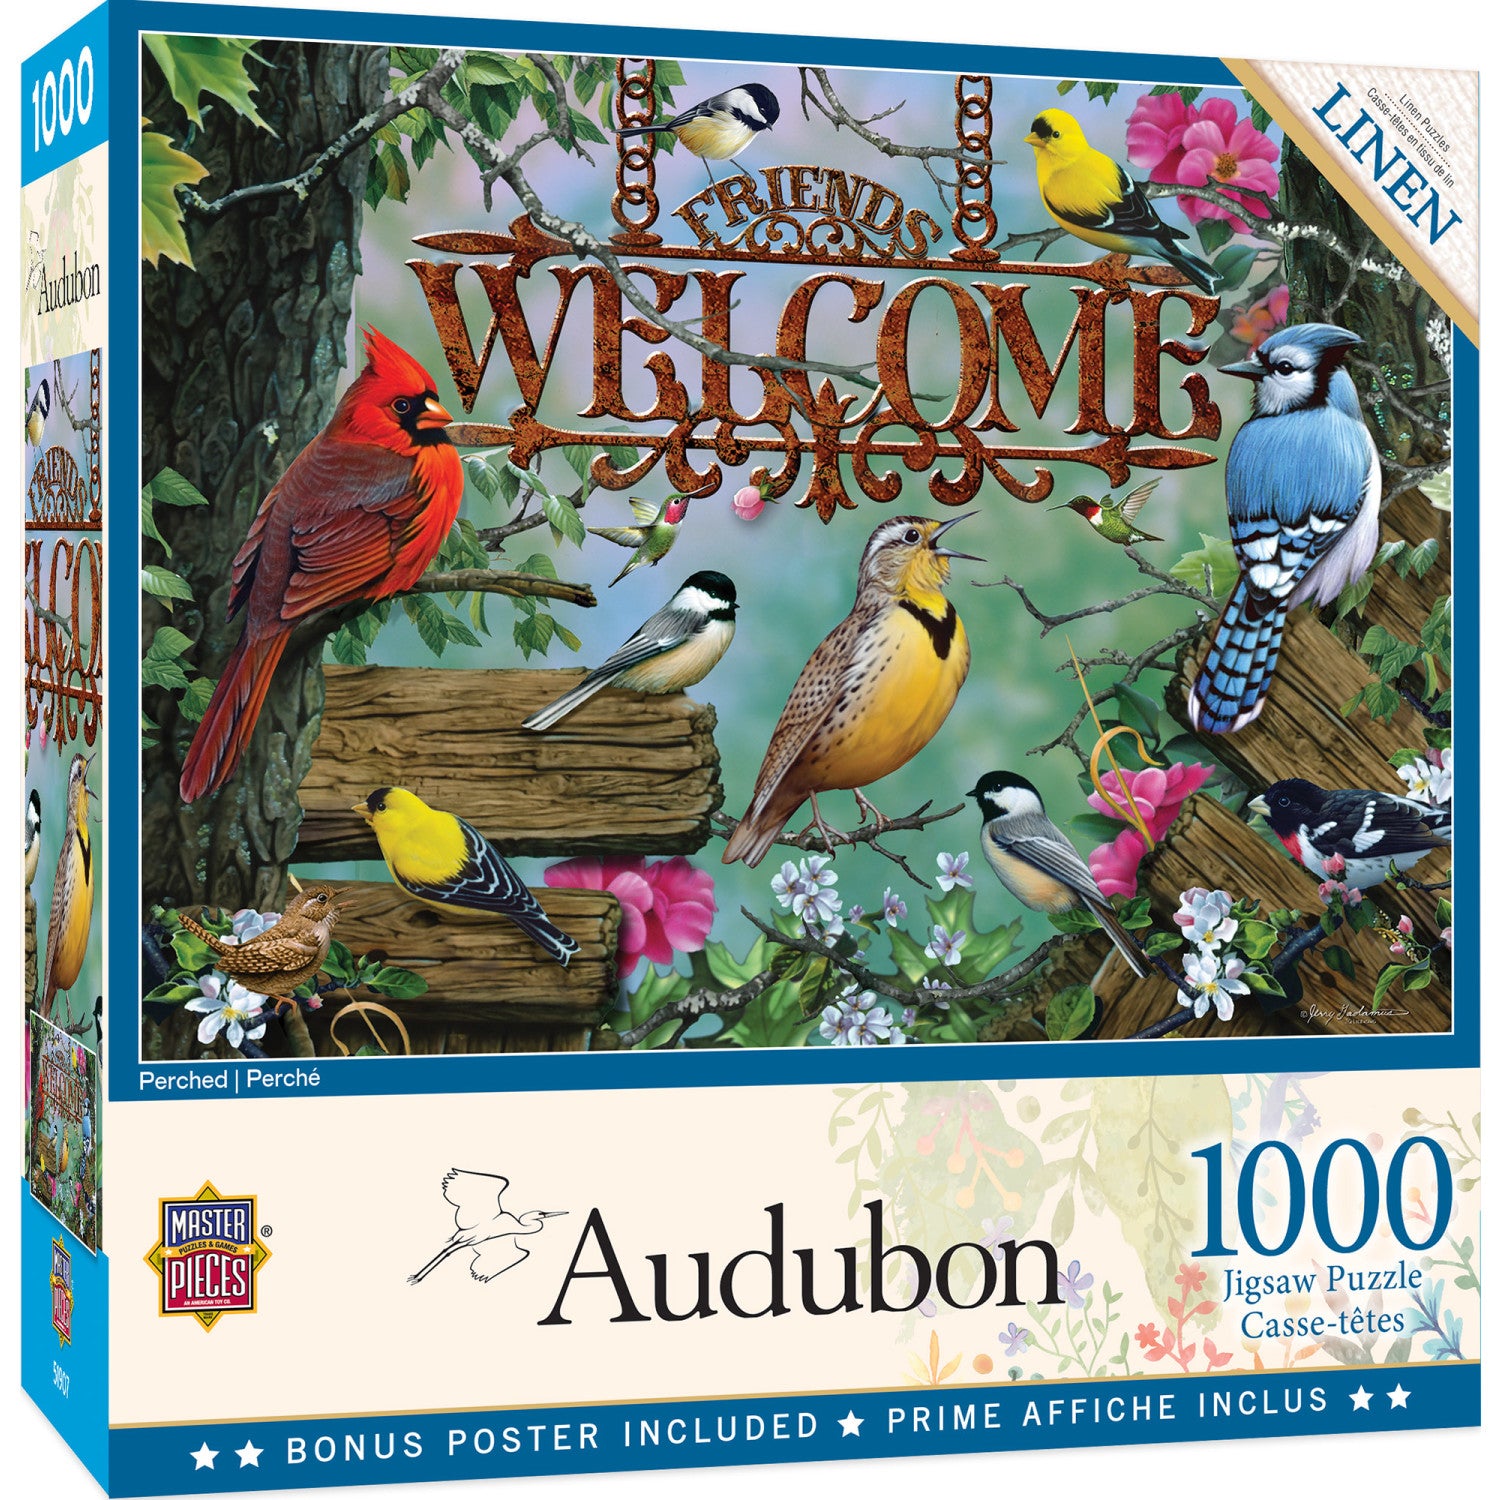 Audubon - Perched 1000 Piece Jigsaw Puzzle